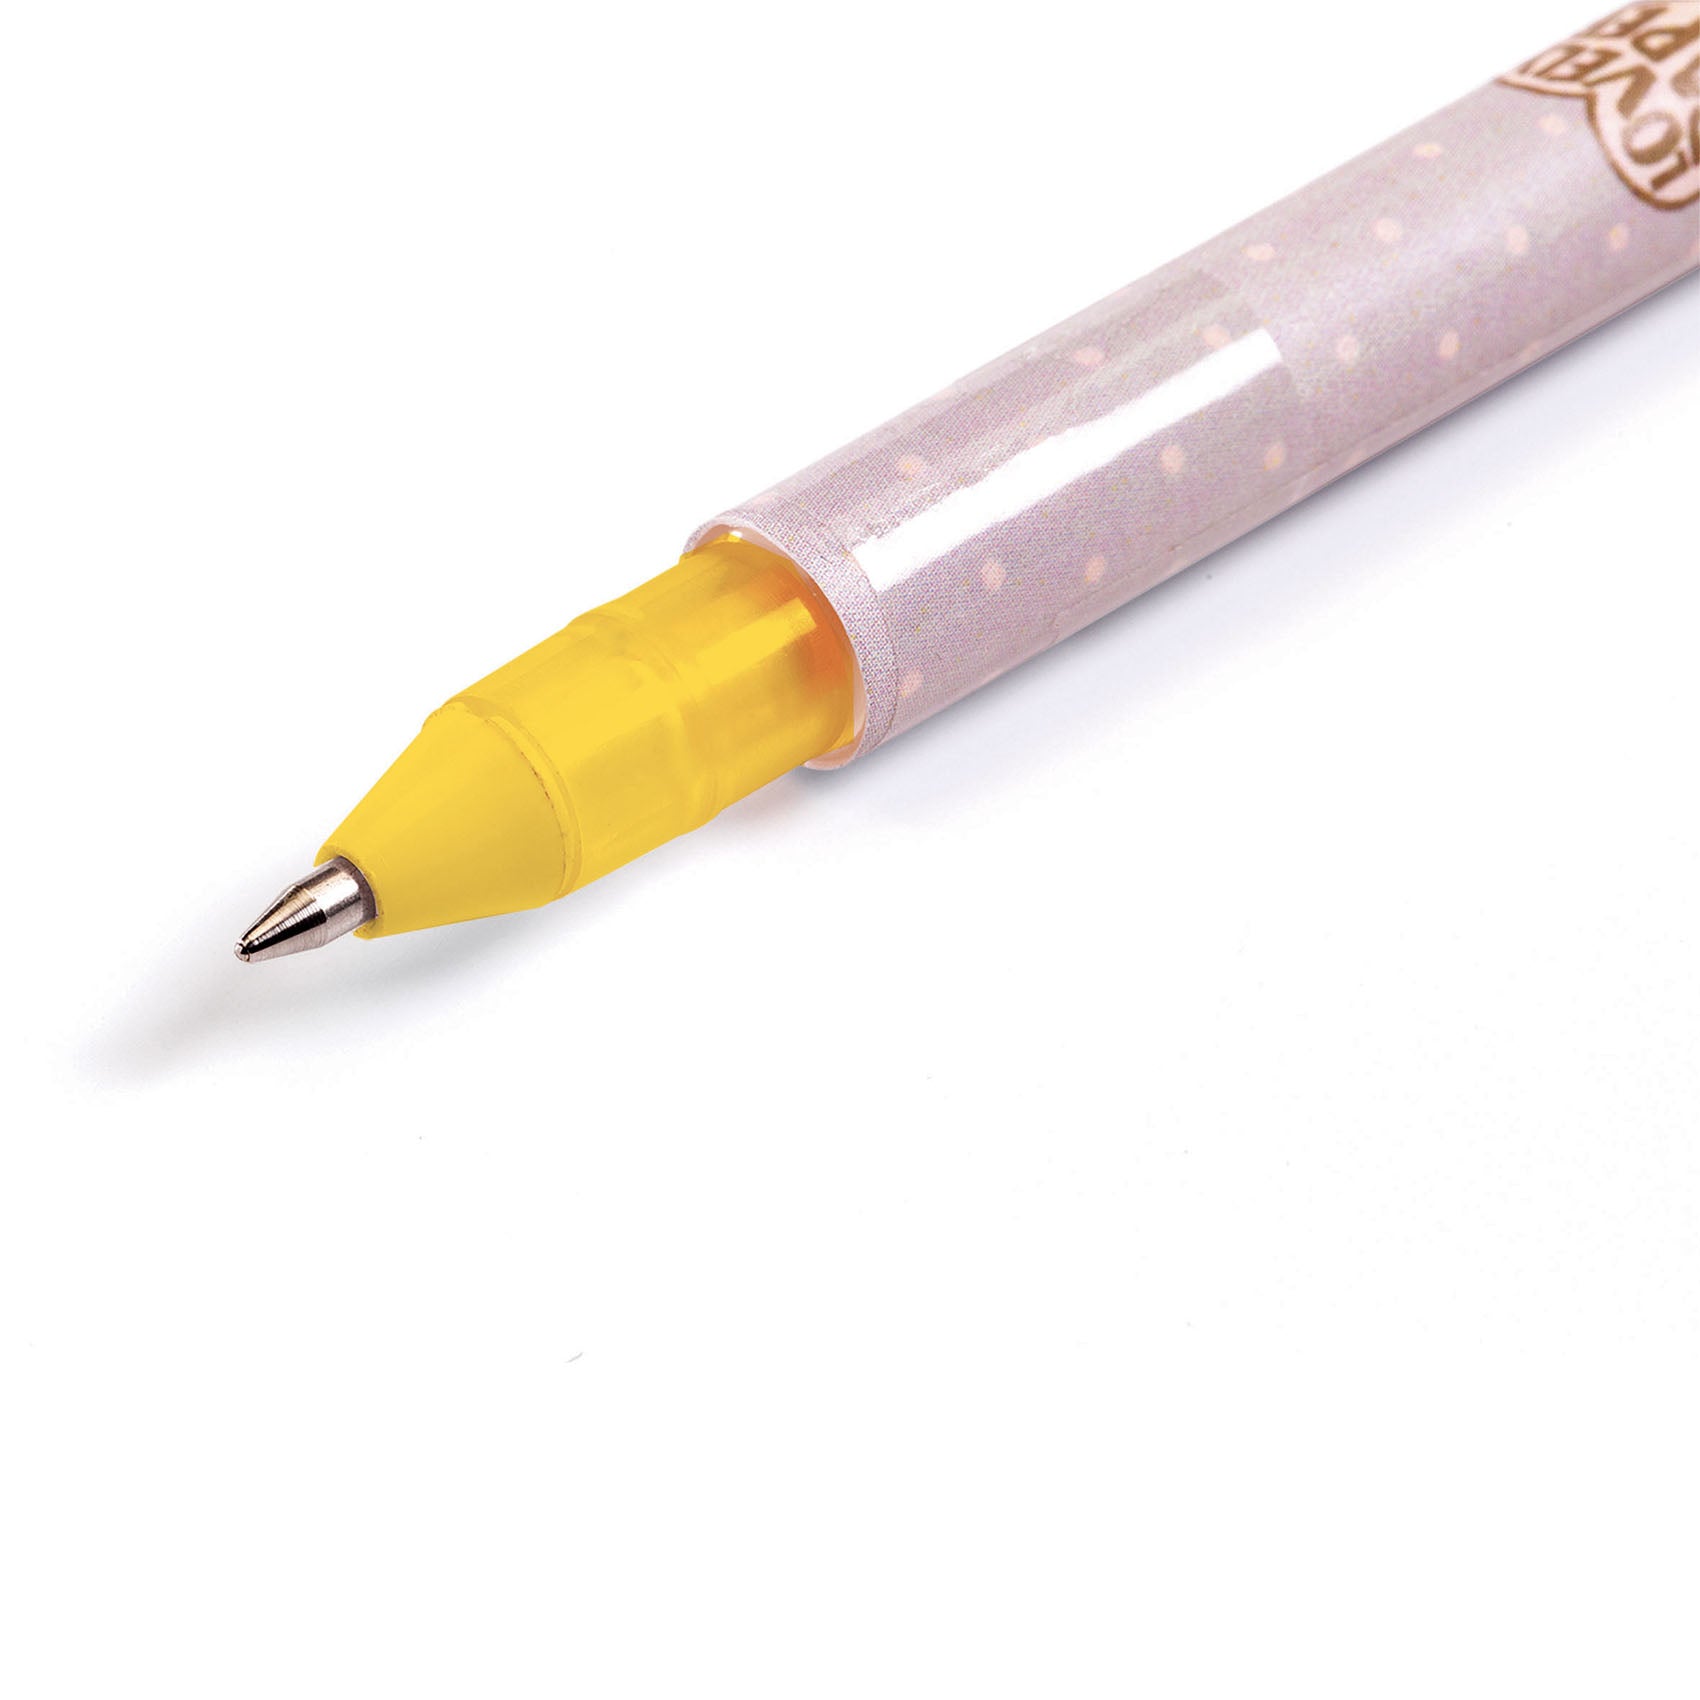 nur-7-12-eur-fur-10-stylos-gel-classique-online-im-shop_1.jpg